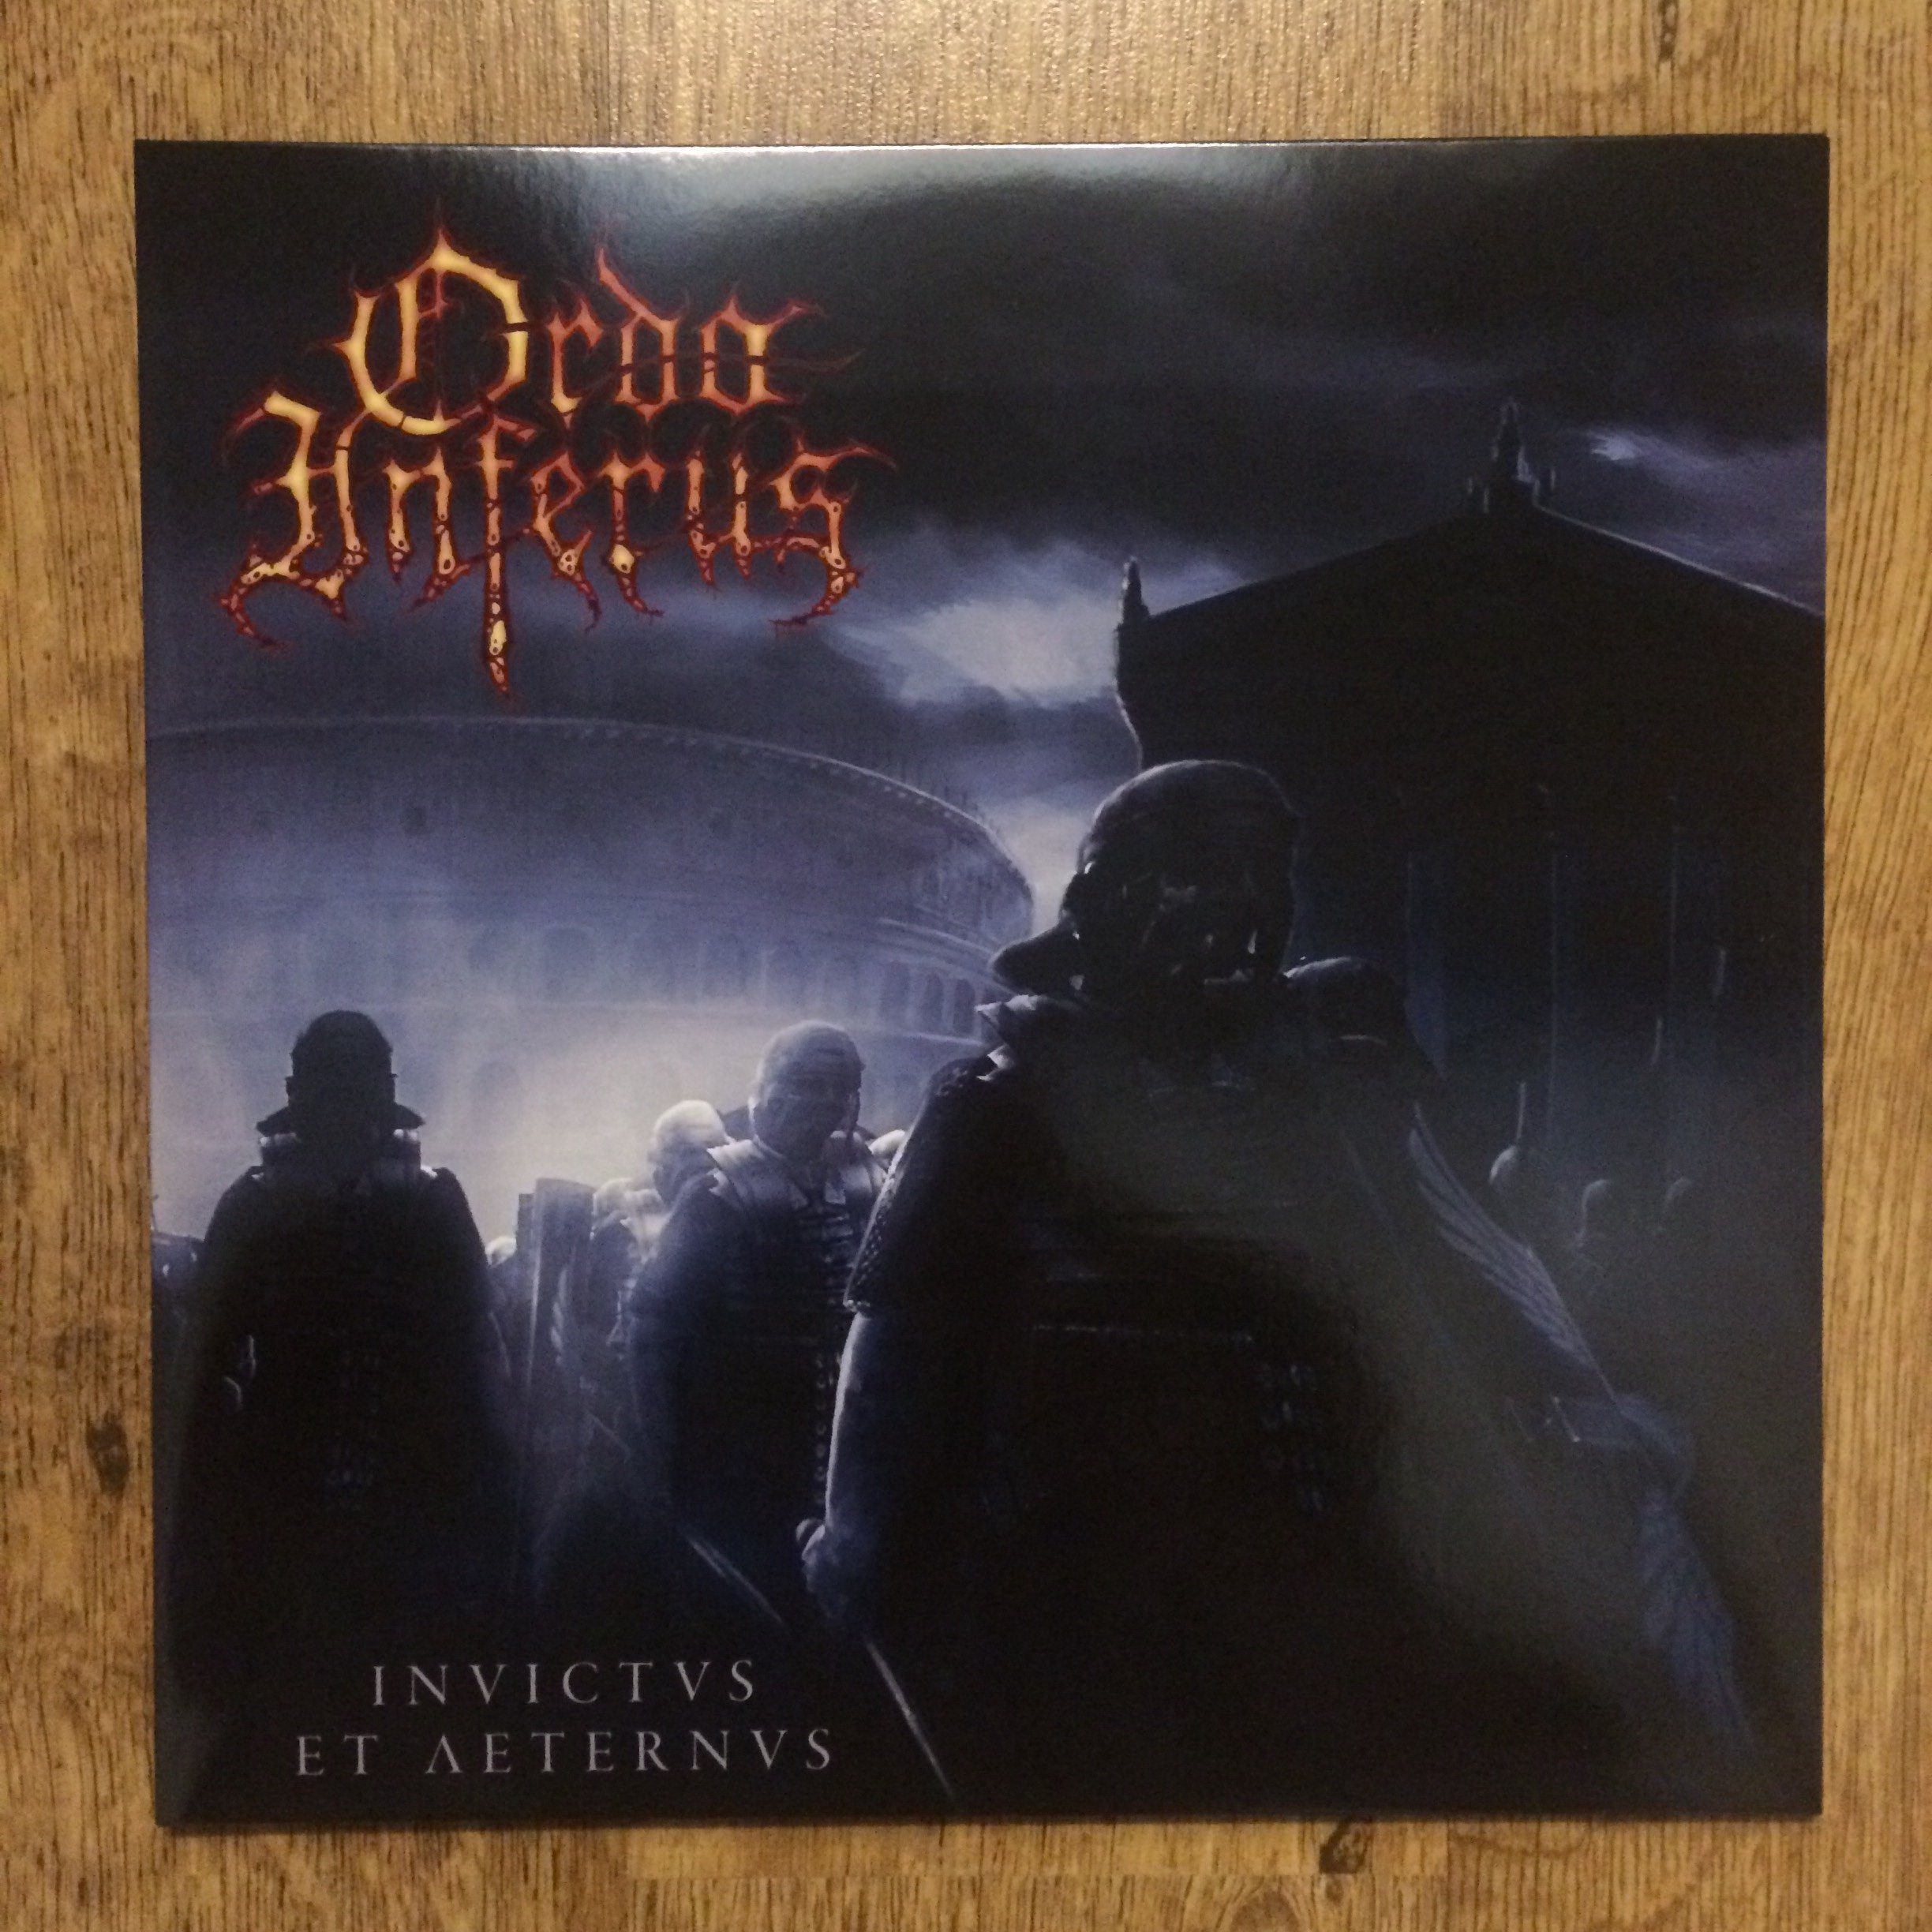 Photo of the Ordo Inferus - "Invictus et Aeternus" LP (Black vinyl)